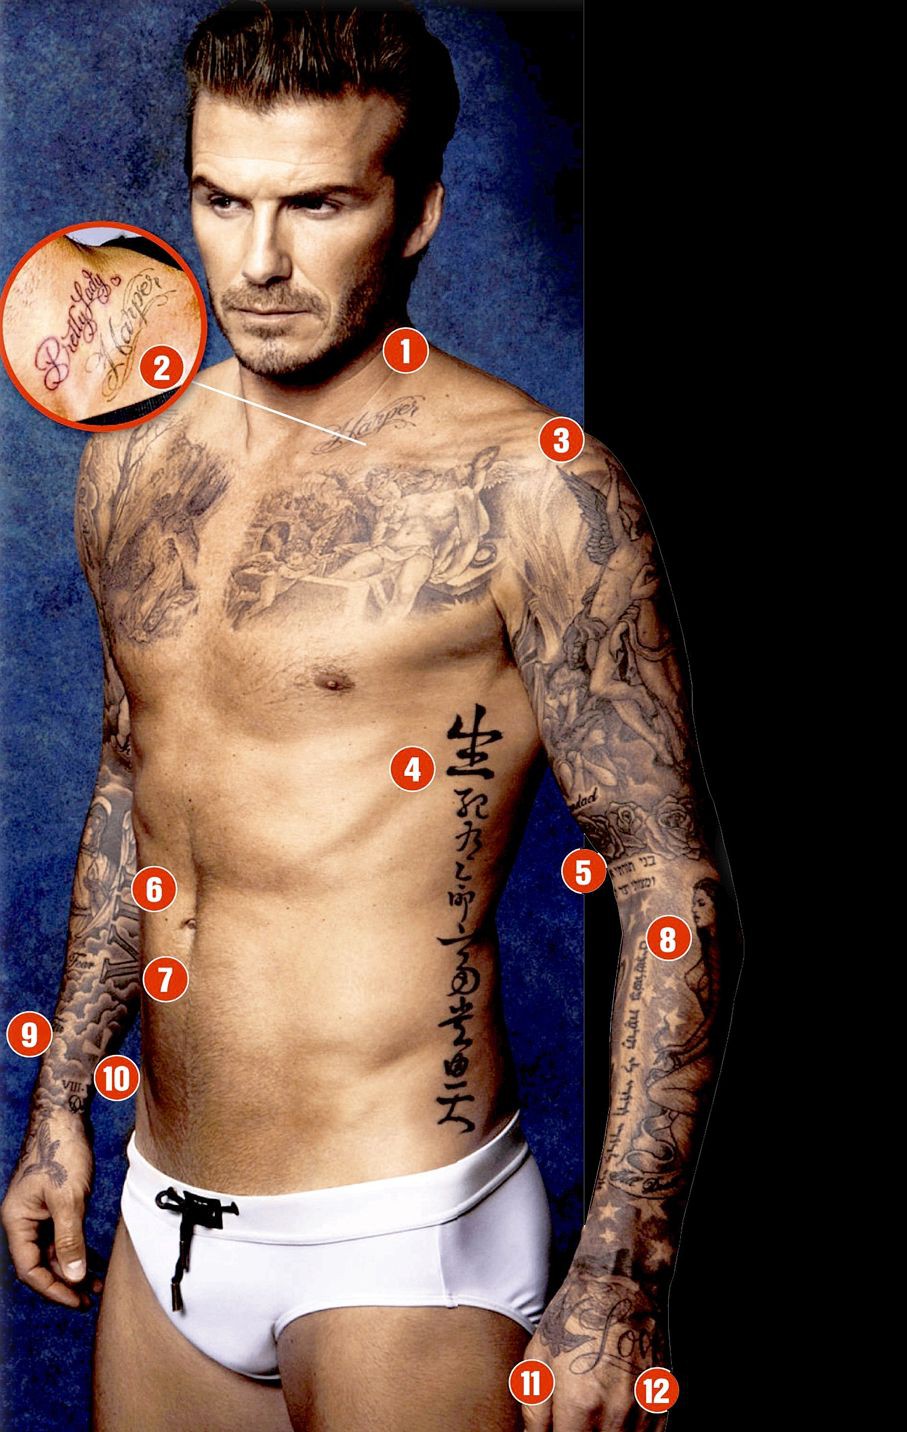 David Beckham đã làm hình xăm rất đẹp trên cơ thể mình. Giá hình xăm của anh là sự bình dân và nền tảng của nghệ thuật đường phố. Các bạn có thể tìm hiểu thêm về các hình xăm của Beckham với giá chỉ bằng một chai nước ngọt. Hãy xem hình chụp liên quan đến từ khóa này và khám phá thêm!